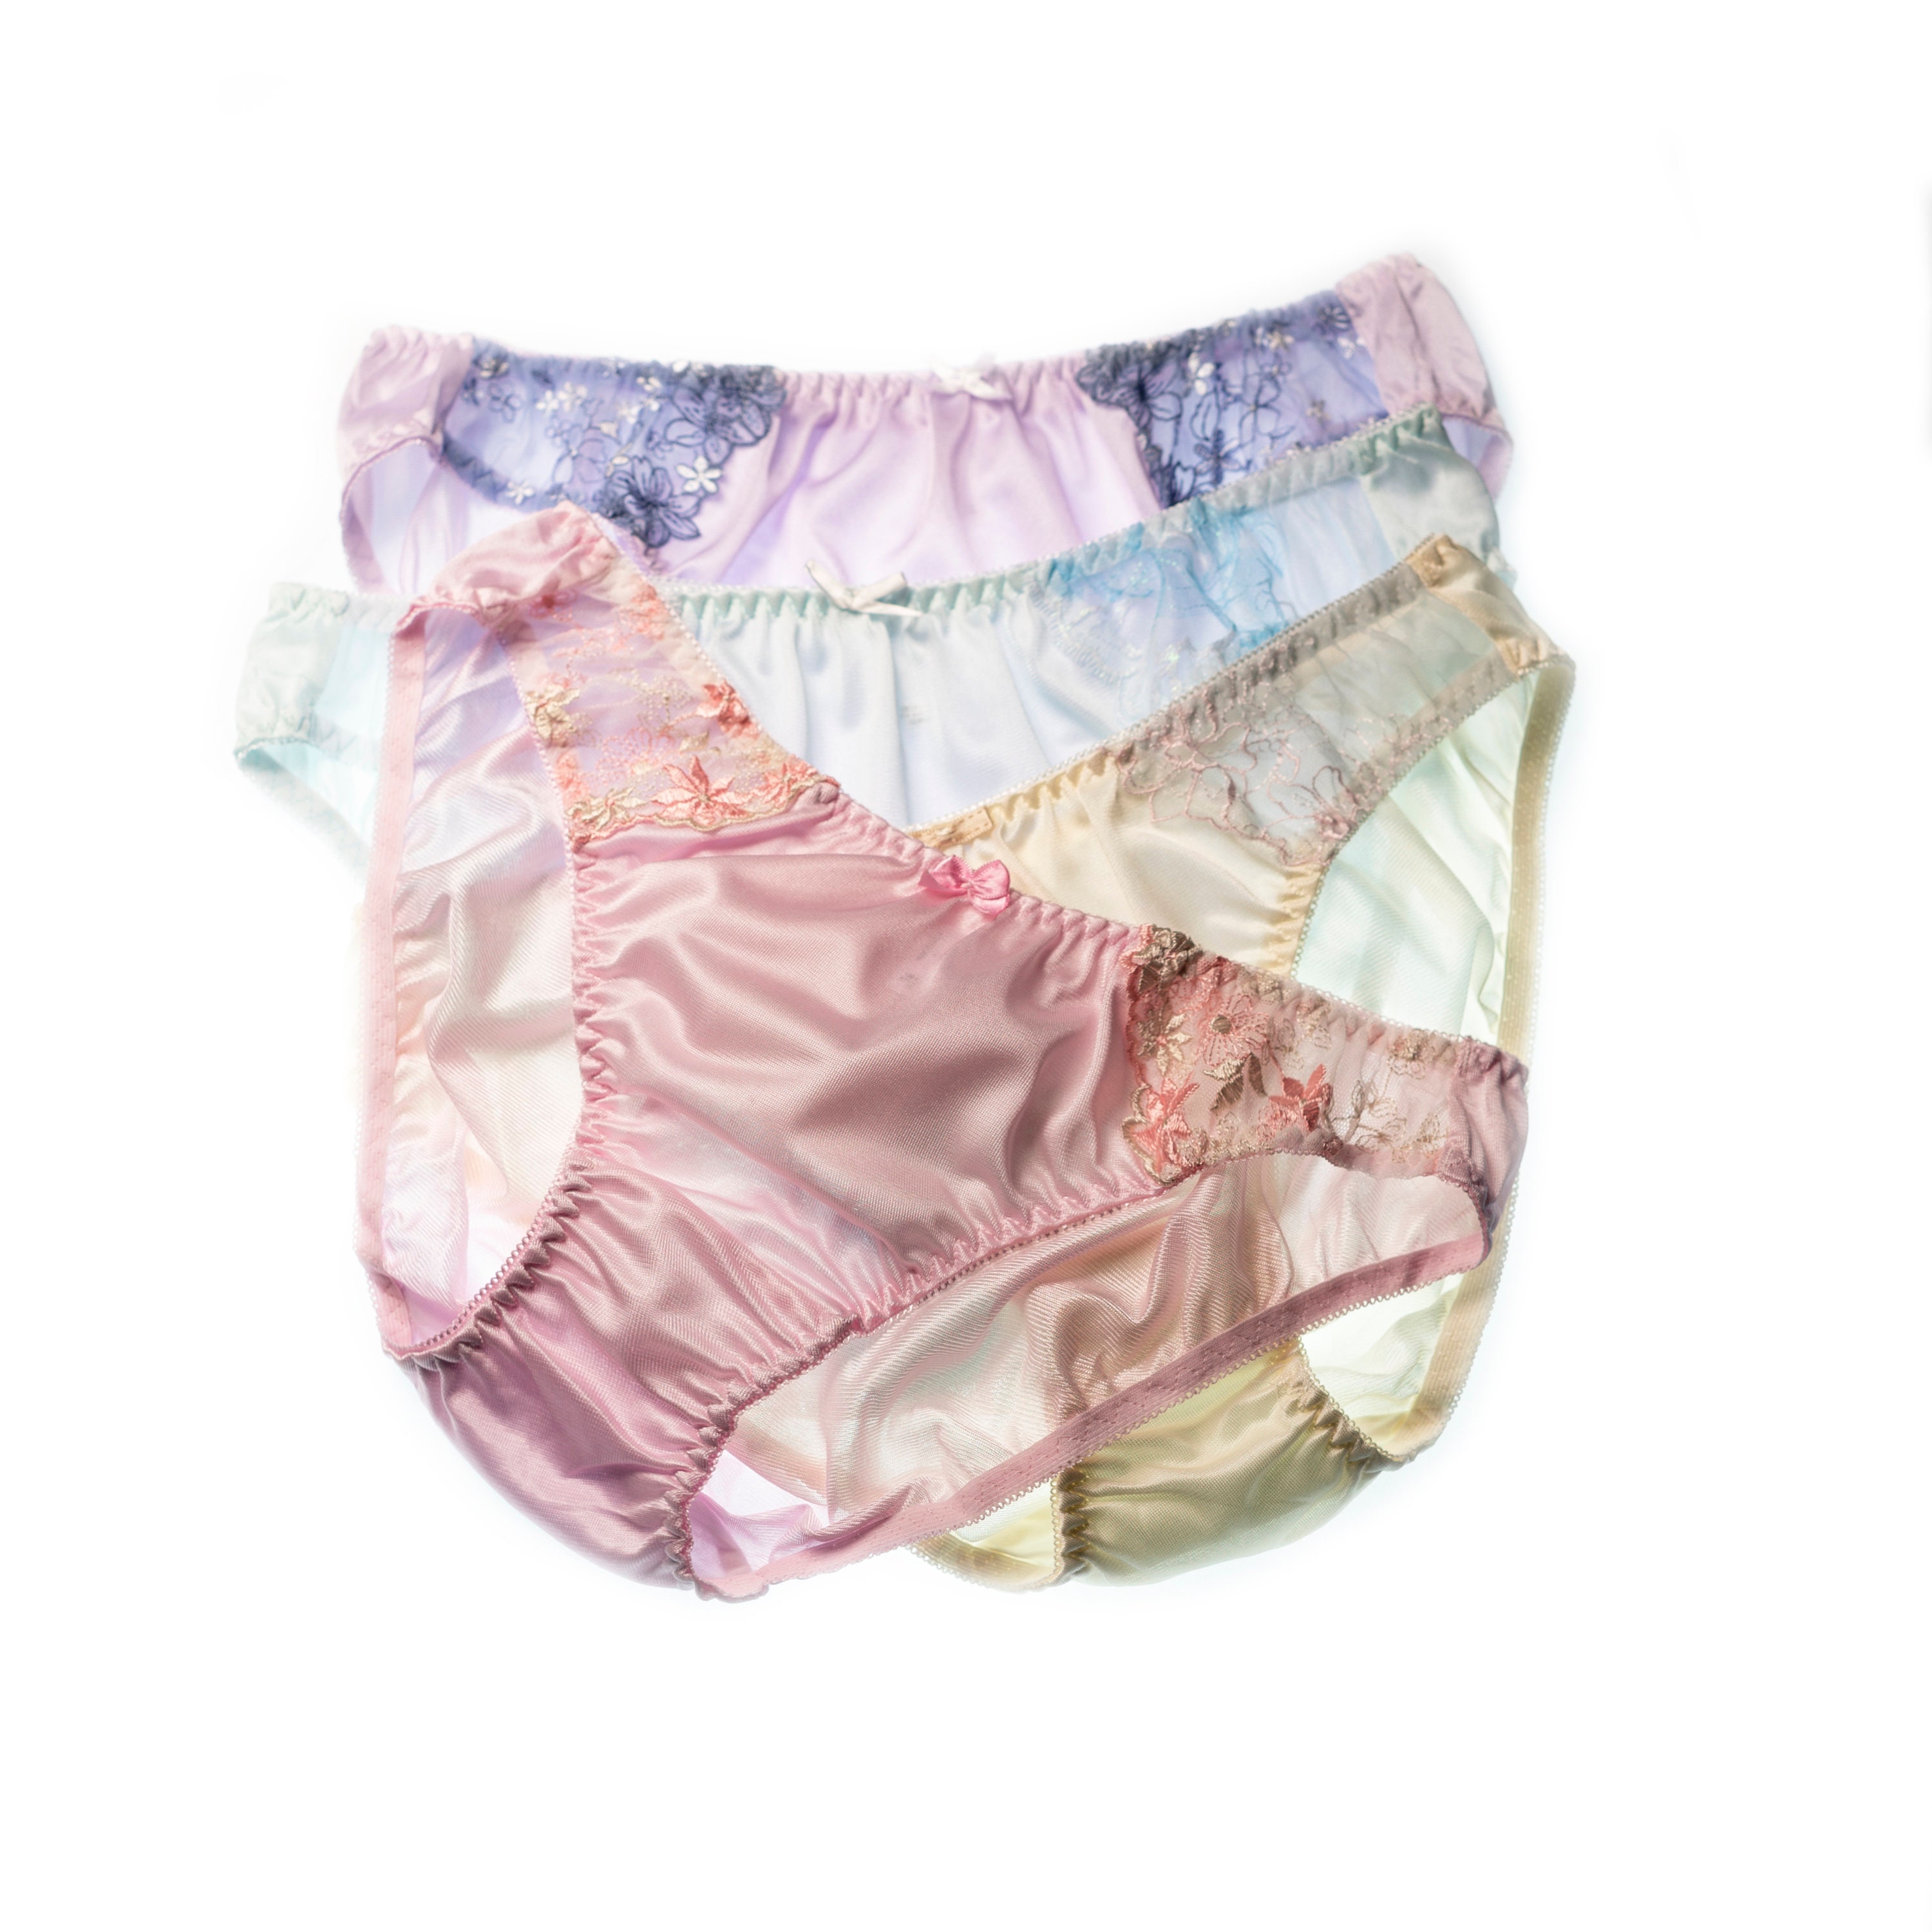 Size LLL vintage style women underwear nylon panties soft briefs pastel  thailand